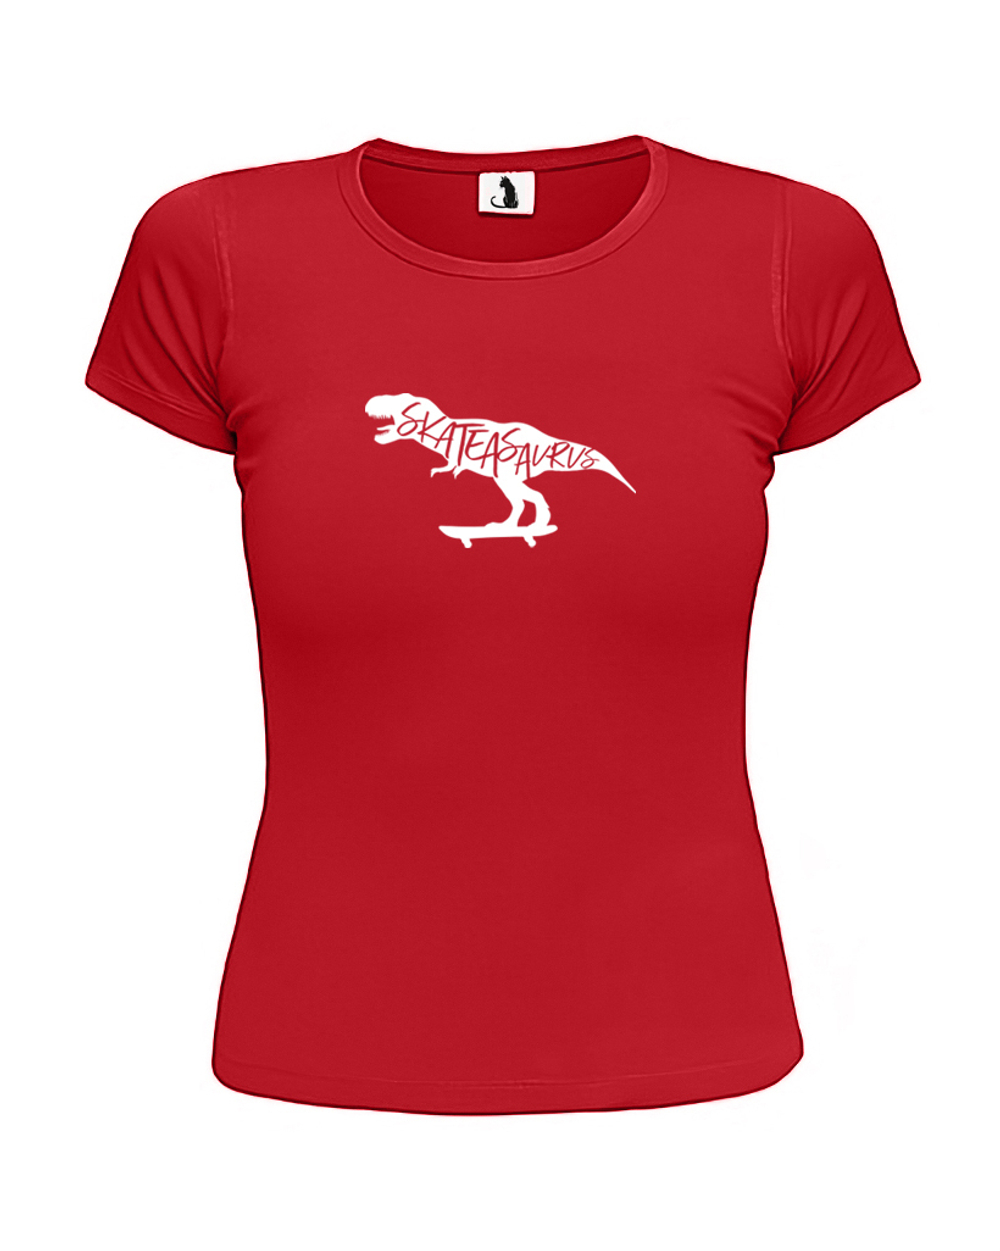 Футболка Skateasaurus женская приталенная красная с белым рисунком